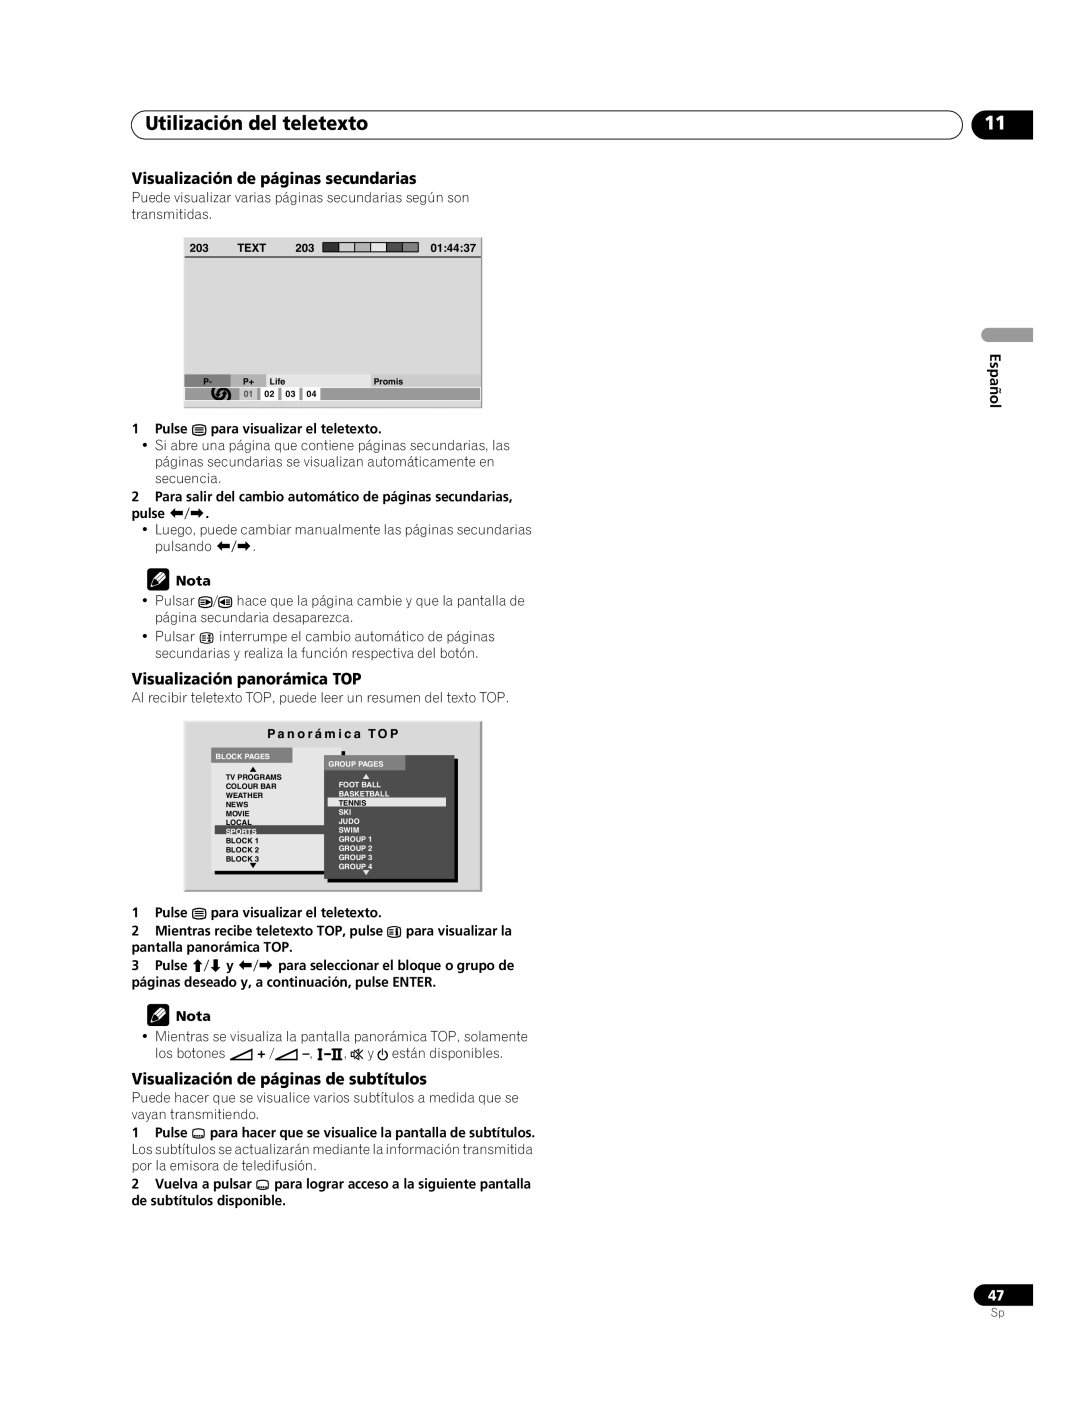 Pioneer PDP-507XG Utilización del teletexto, Visualización de páginas secundarias, Visualización panorámica TOP, Español 